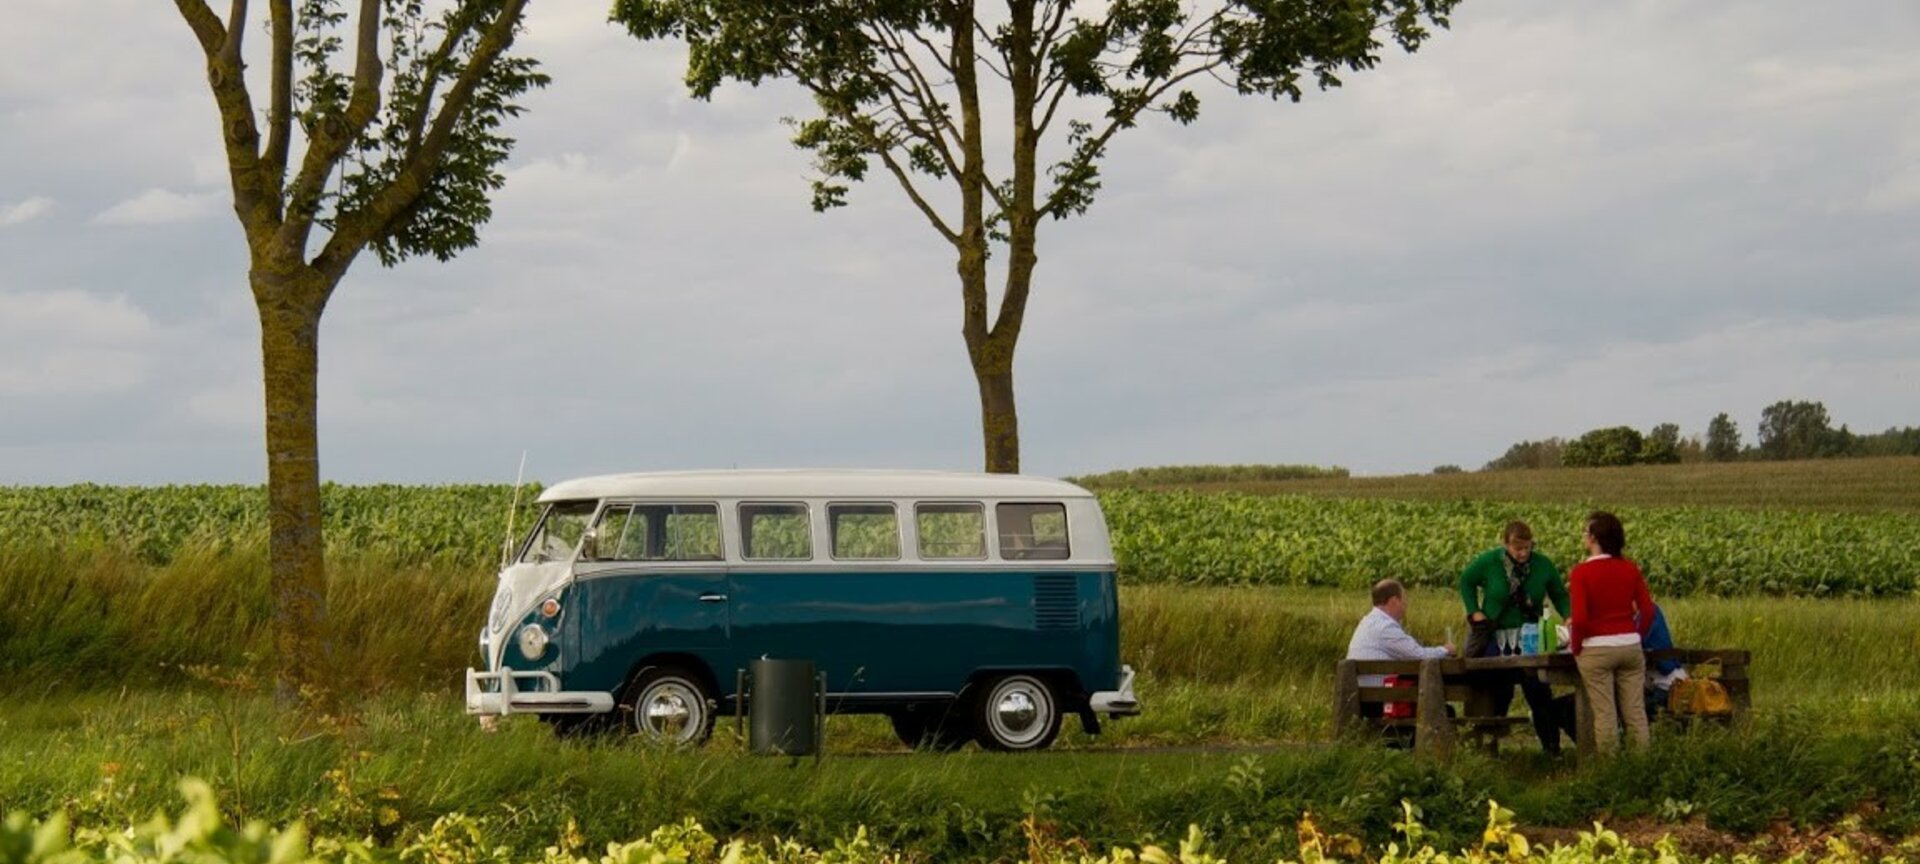 Toeren in Haspengouw met een oldtimer VW t1 bus - picknick onderweg
met de splitbus